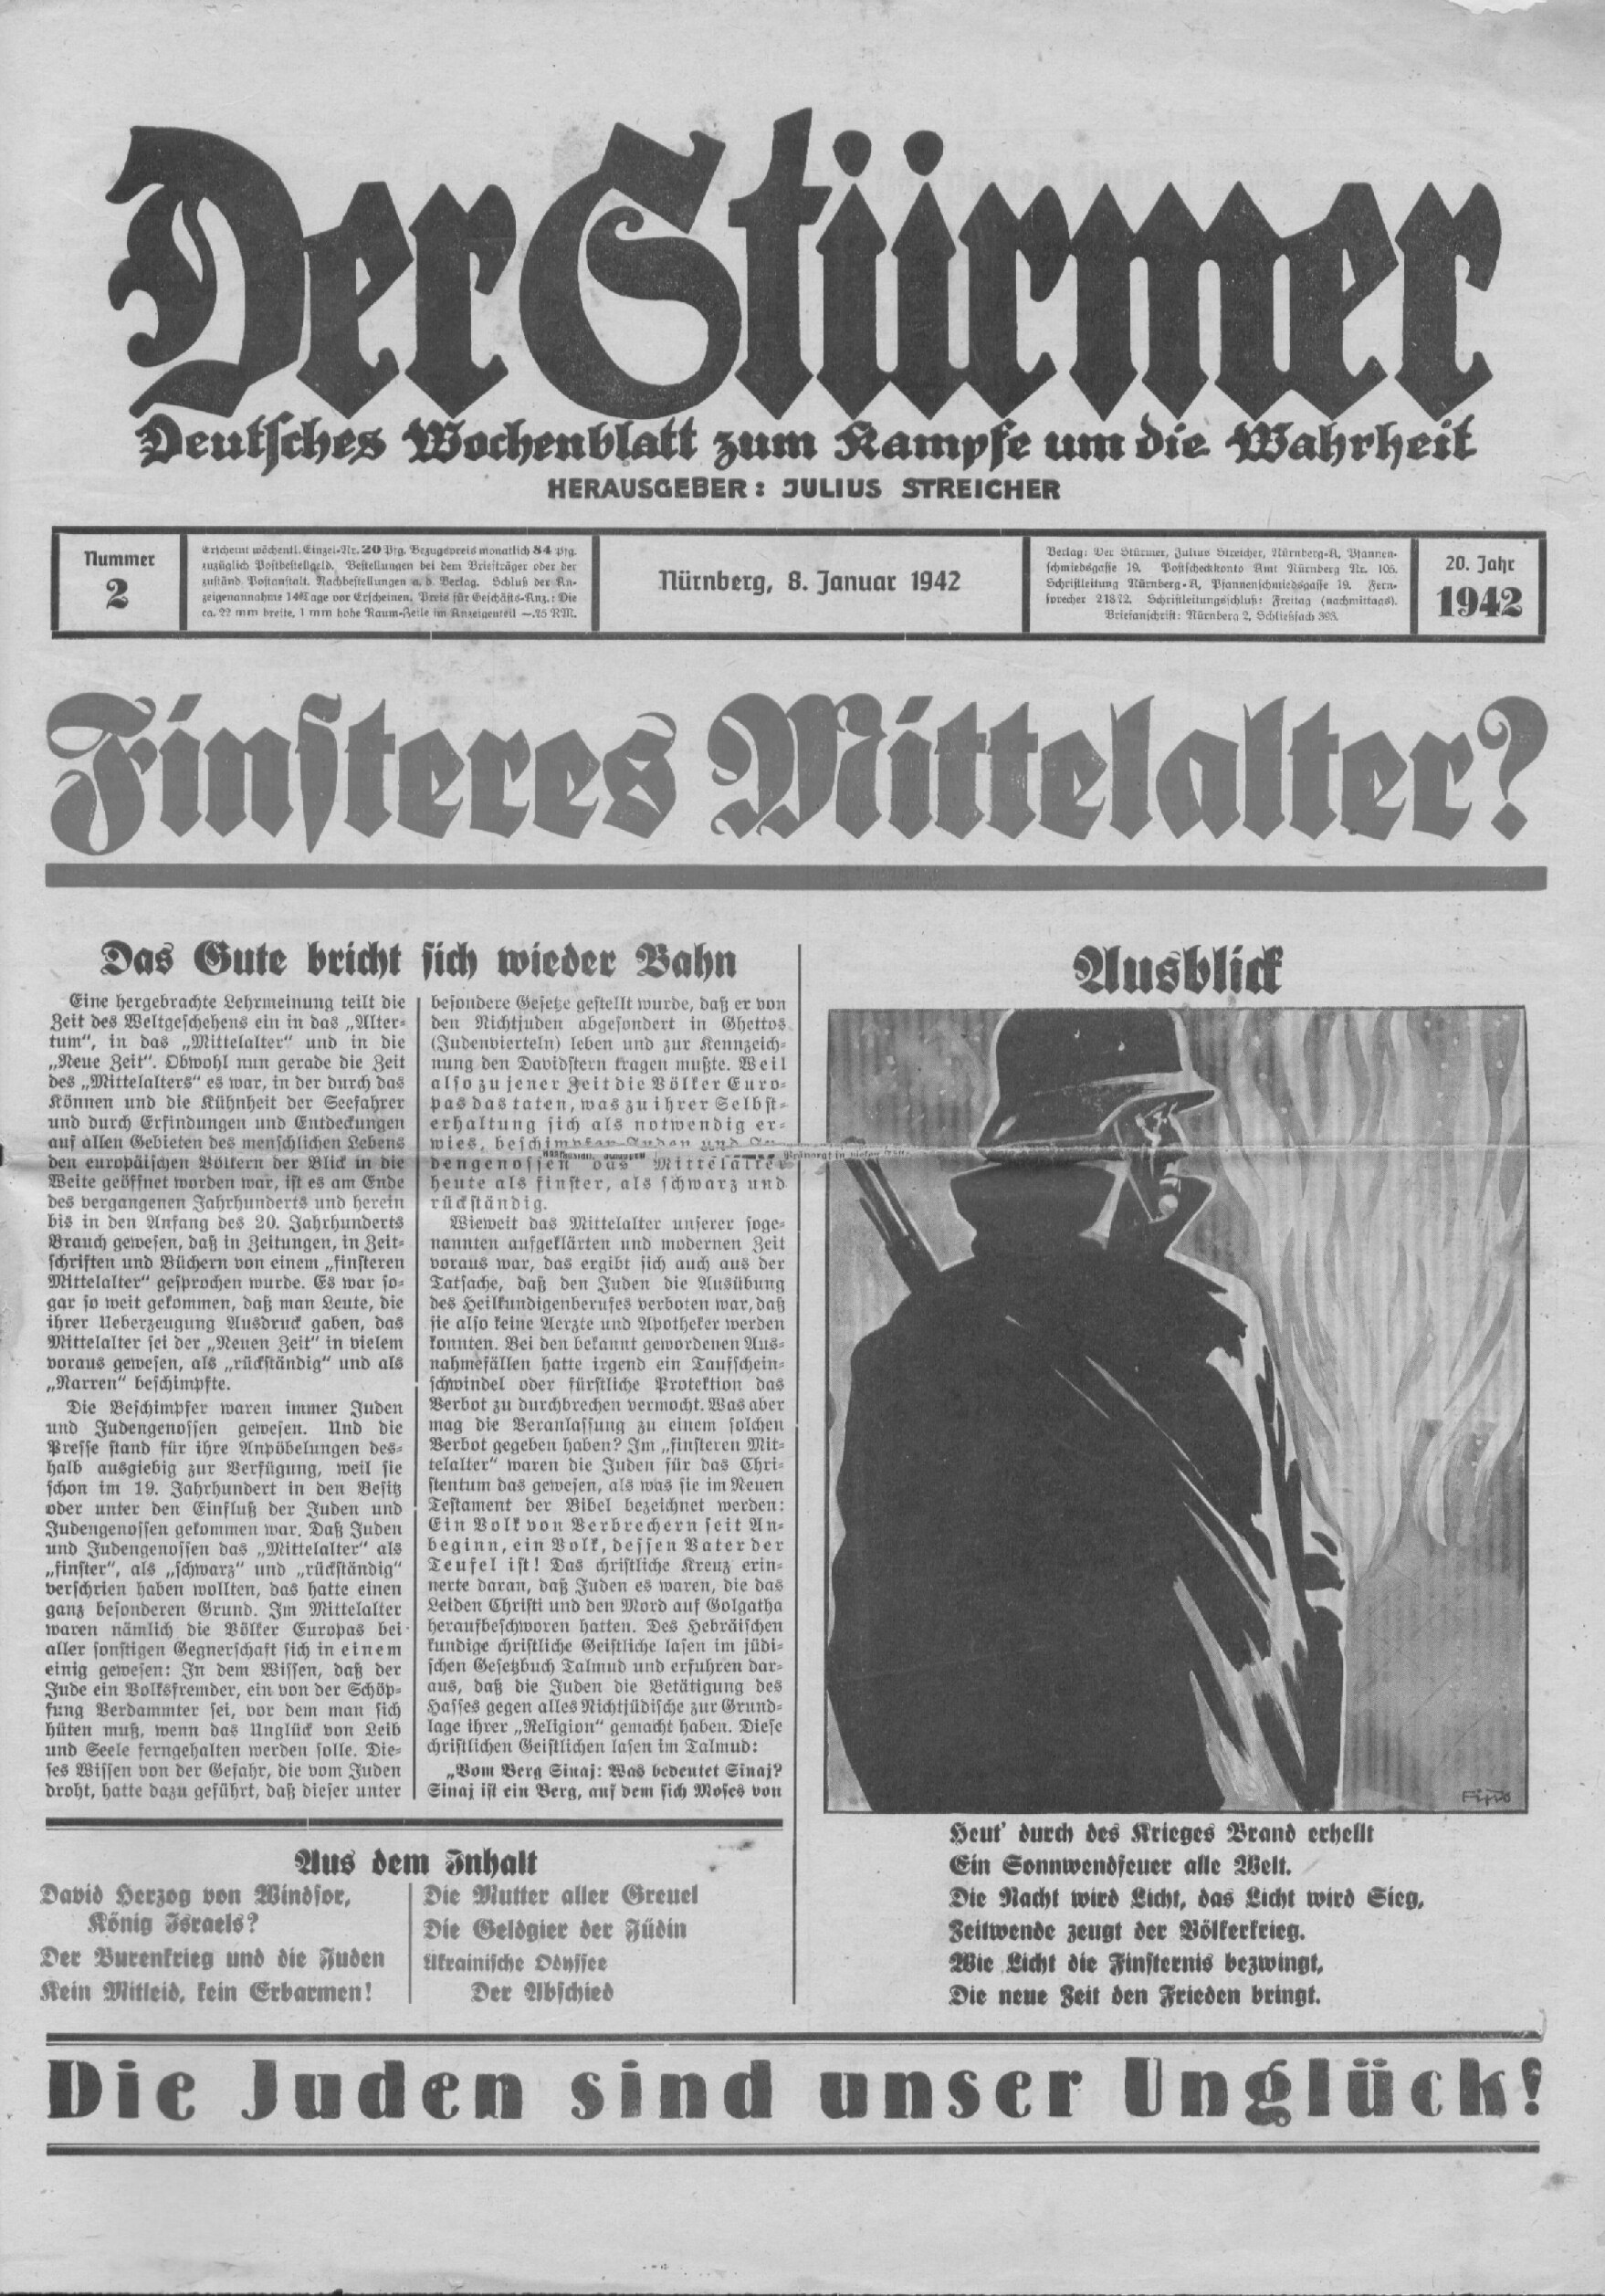 Der Stürmer - 1942 Nr. 02 - Finsteres Mittelalter